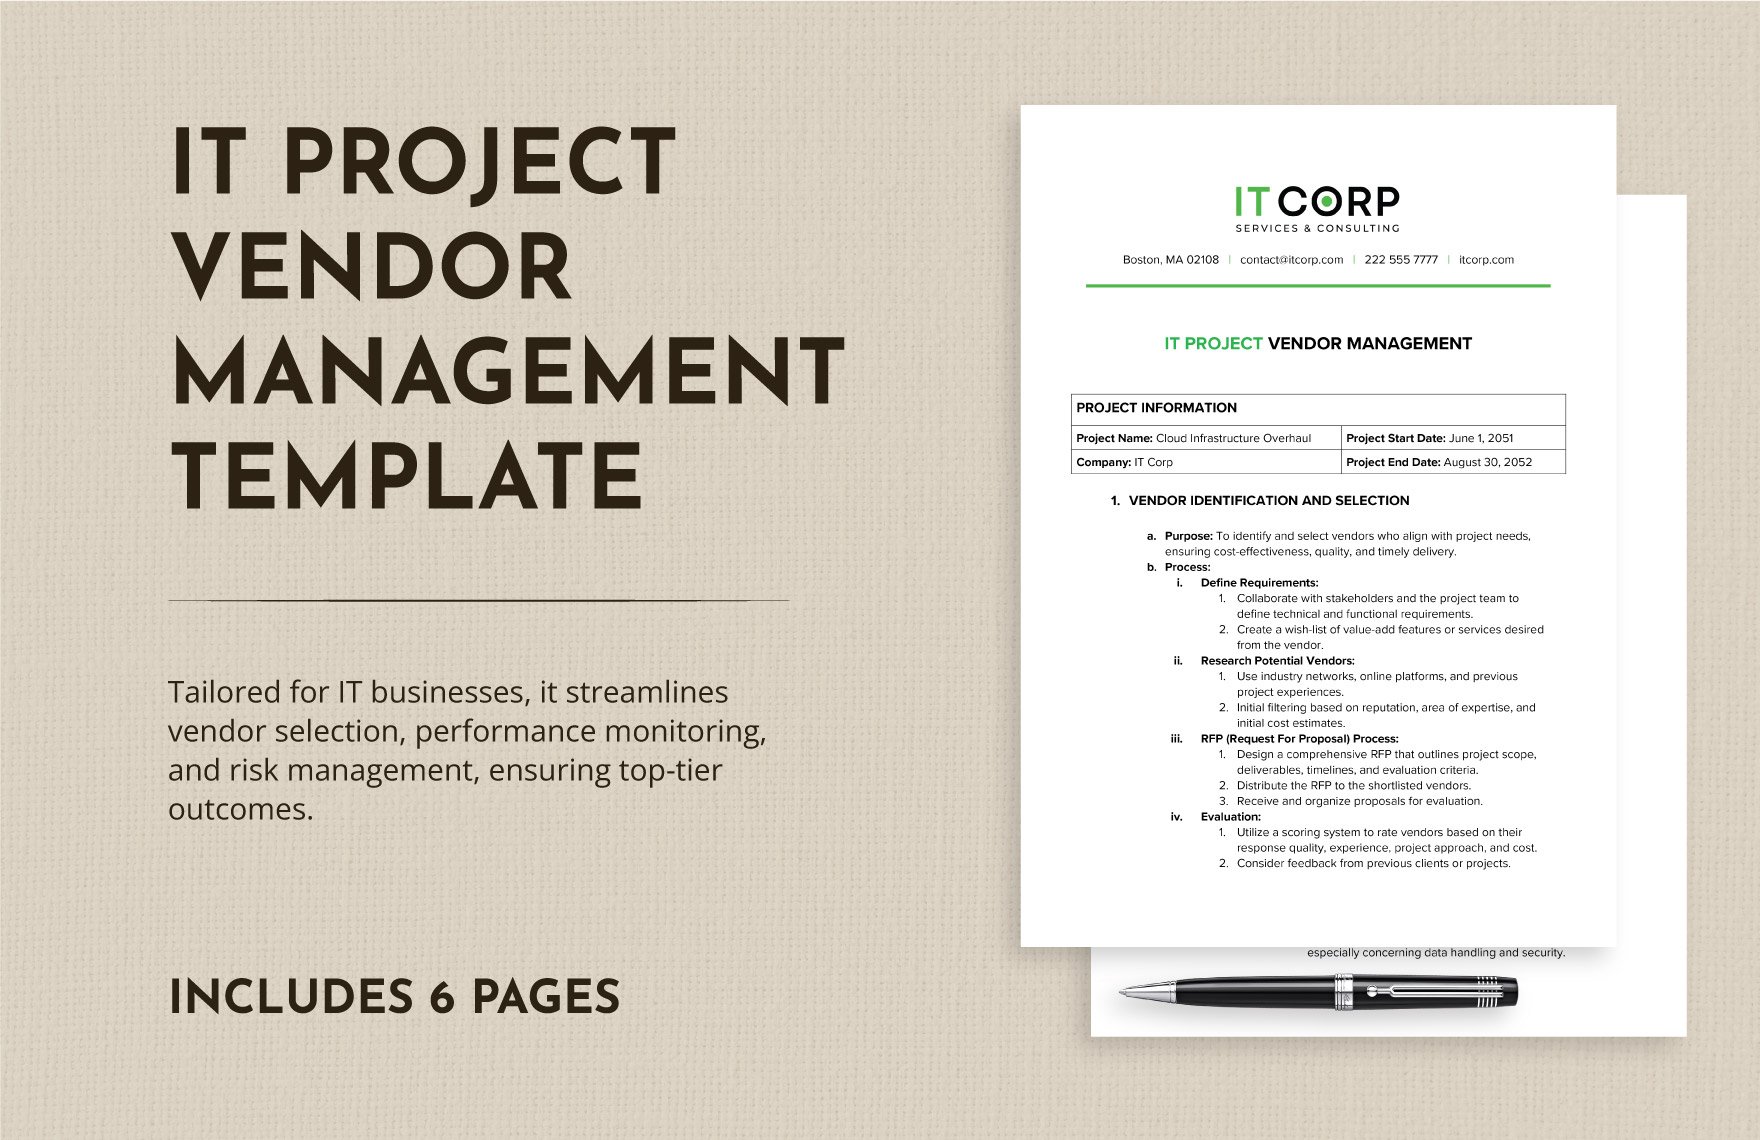 IT Project Vendor Management Template